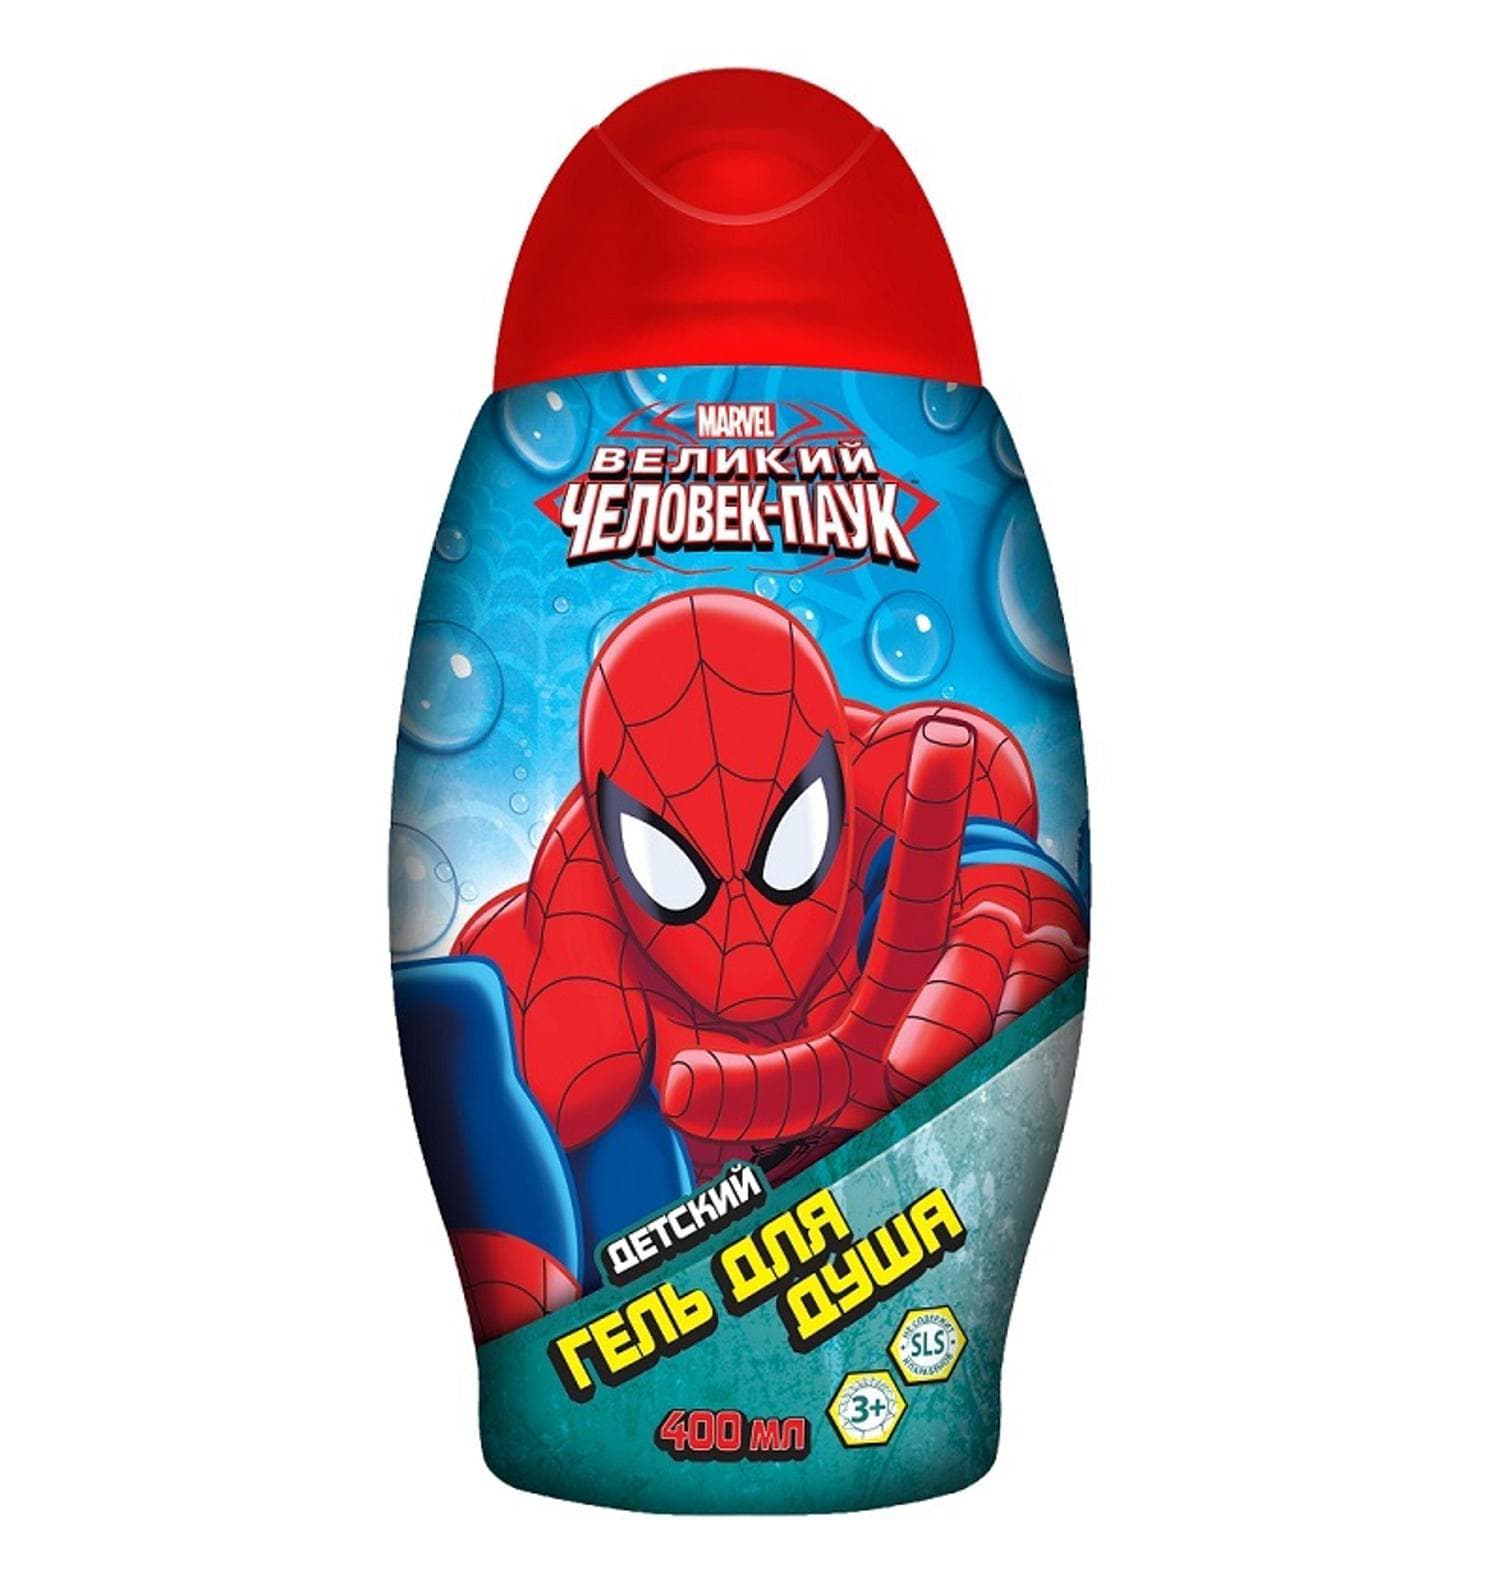 Гель для душа для мальчика. Spider-man гель для душа 400мл. Clever Spider-man детский шампунь для волос 400 мл. Шампунь и гель для душа человек паук. Гель для душа детский.